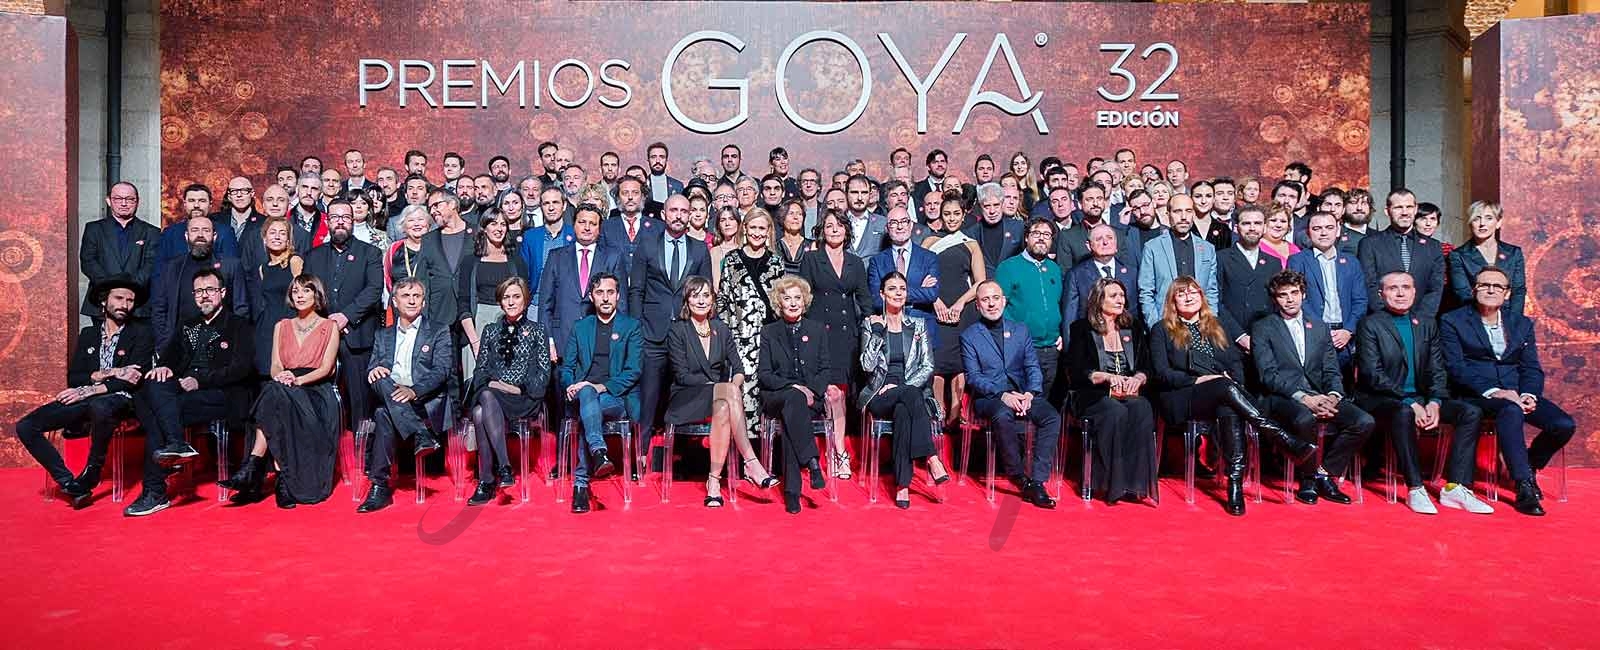 La foto de familia de los nominados a los Premios Goya 2018